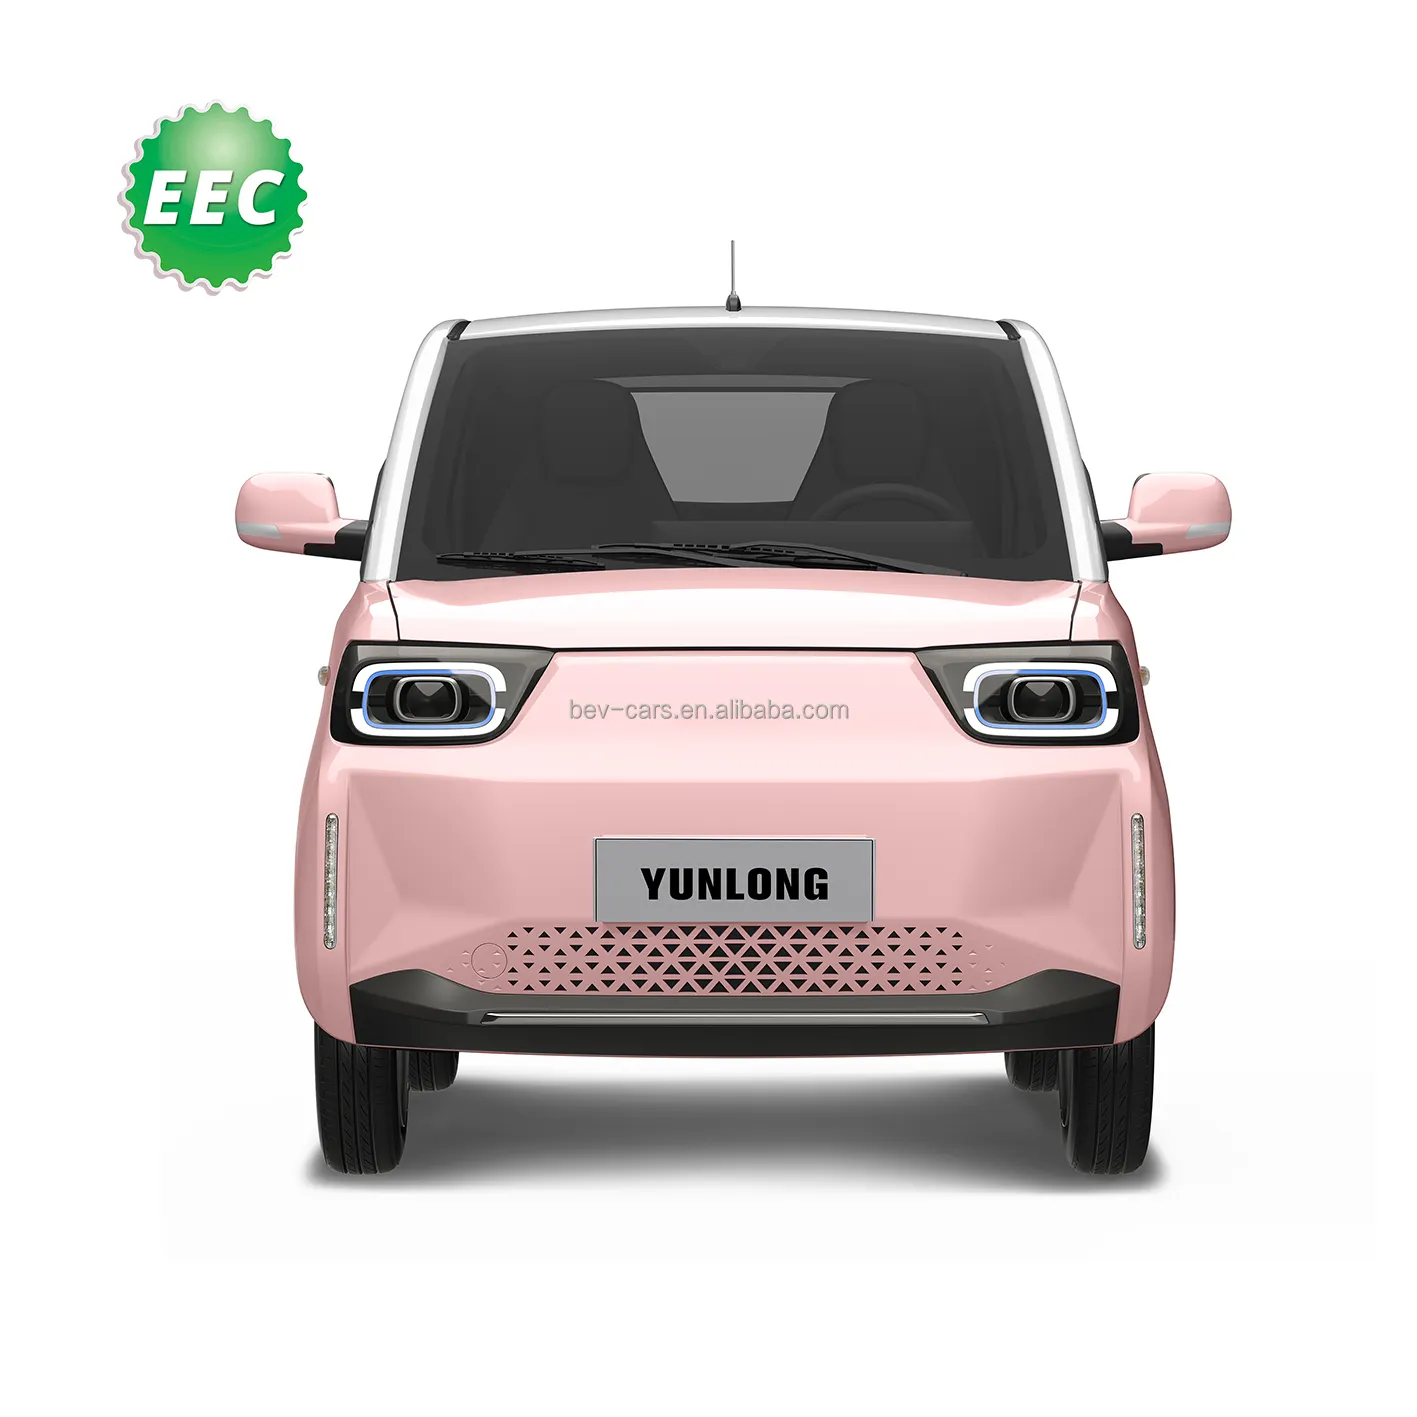 יונלונג ניידות עירונית מכונית רכב חשמלי מיני לנער כונן 4 גלגלים EEC רכב חשמלי 2 מושבים קדמיים 90 קמ""ש